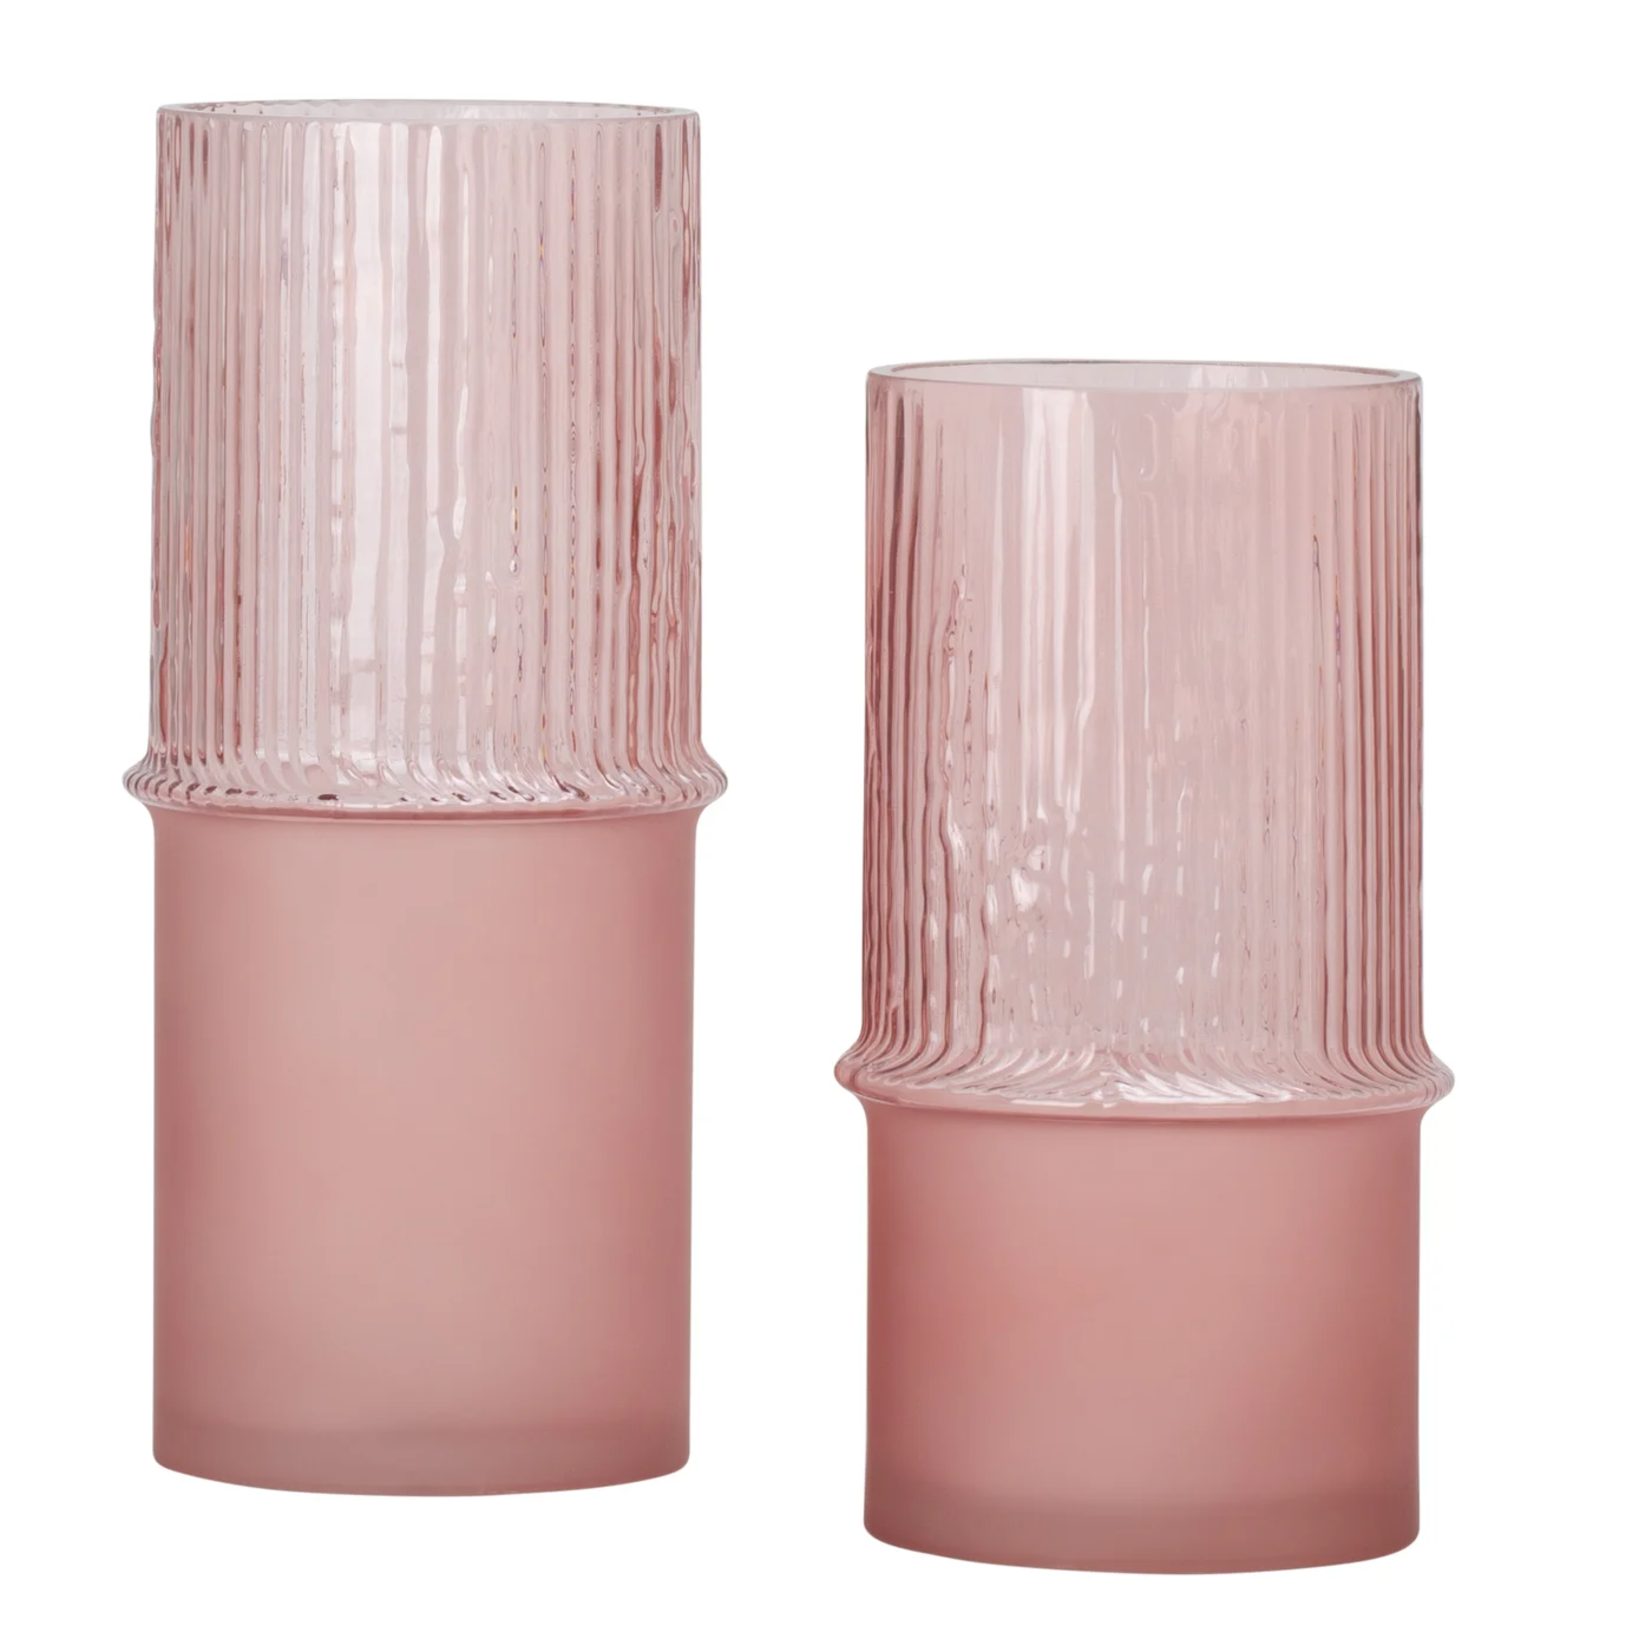 Torre & Tagus Tivoli Cylinder Vase - Pink - 12"h